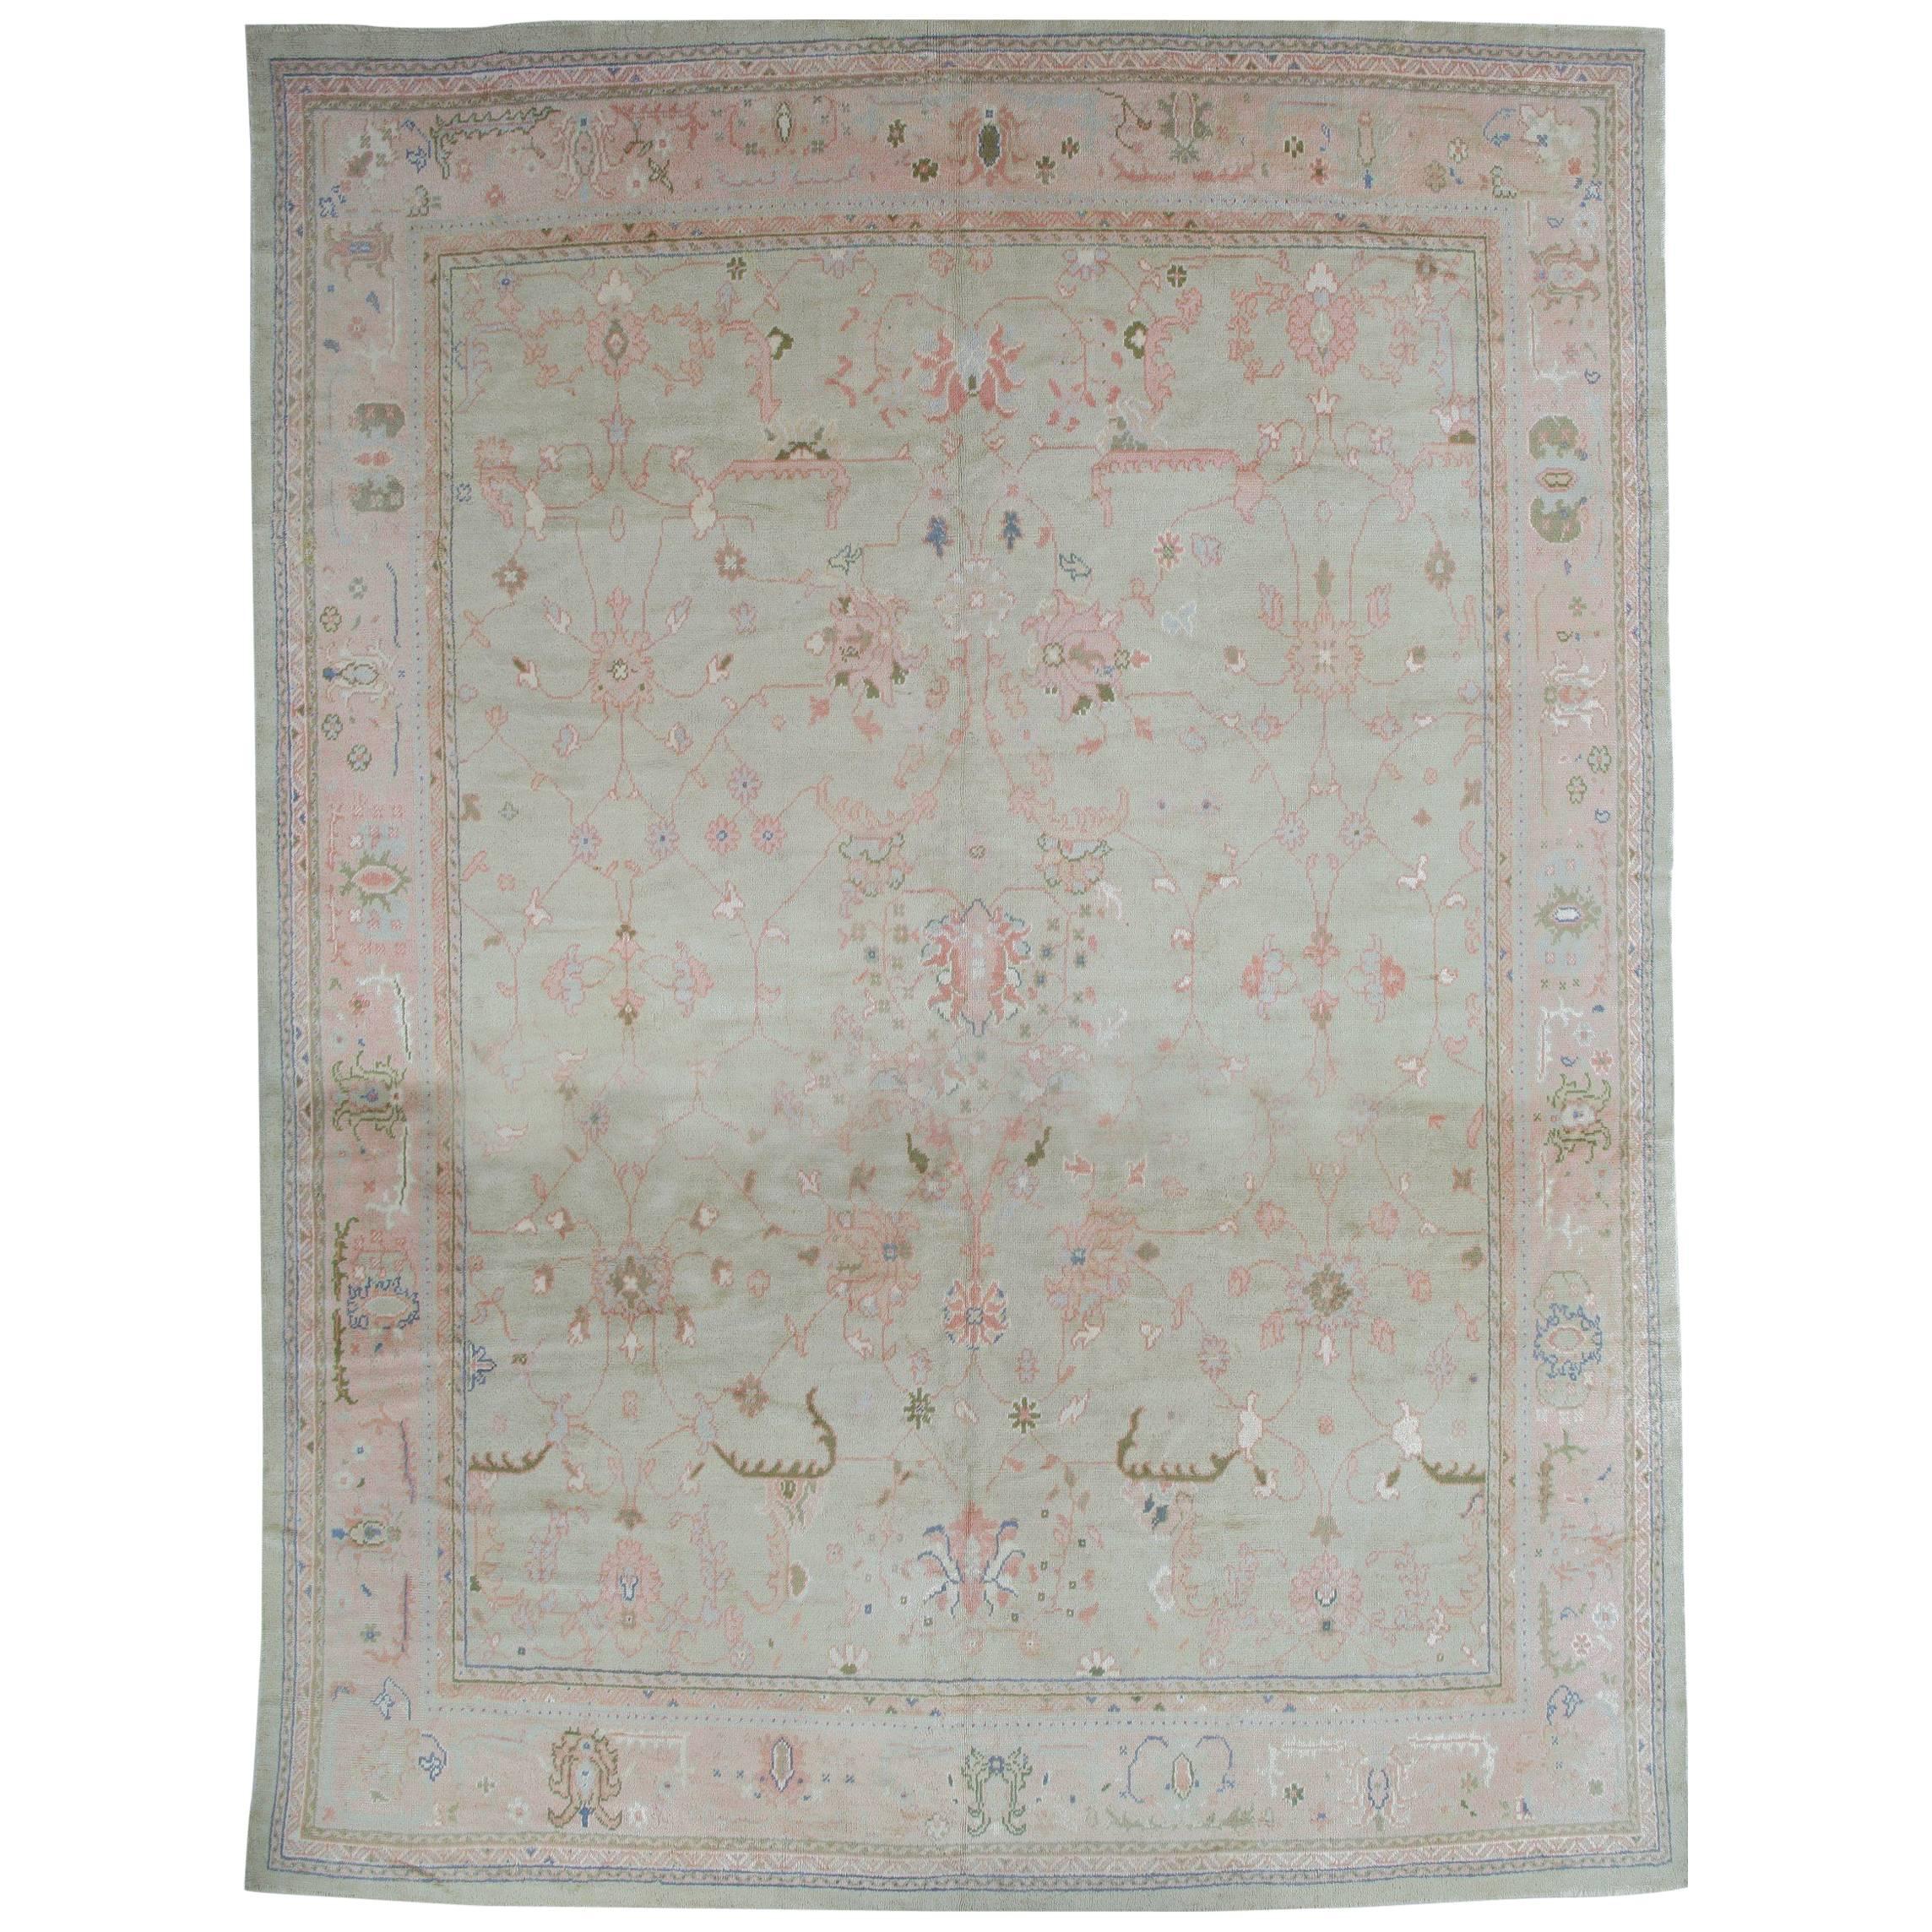 Antique Oushak Carpet, Handmade Turkish Rug, Celadon, Beige, Soft Taupe For Sale